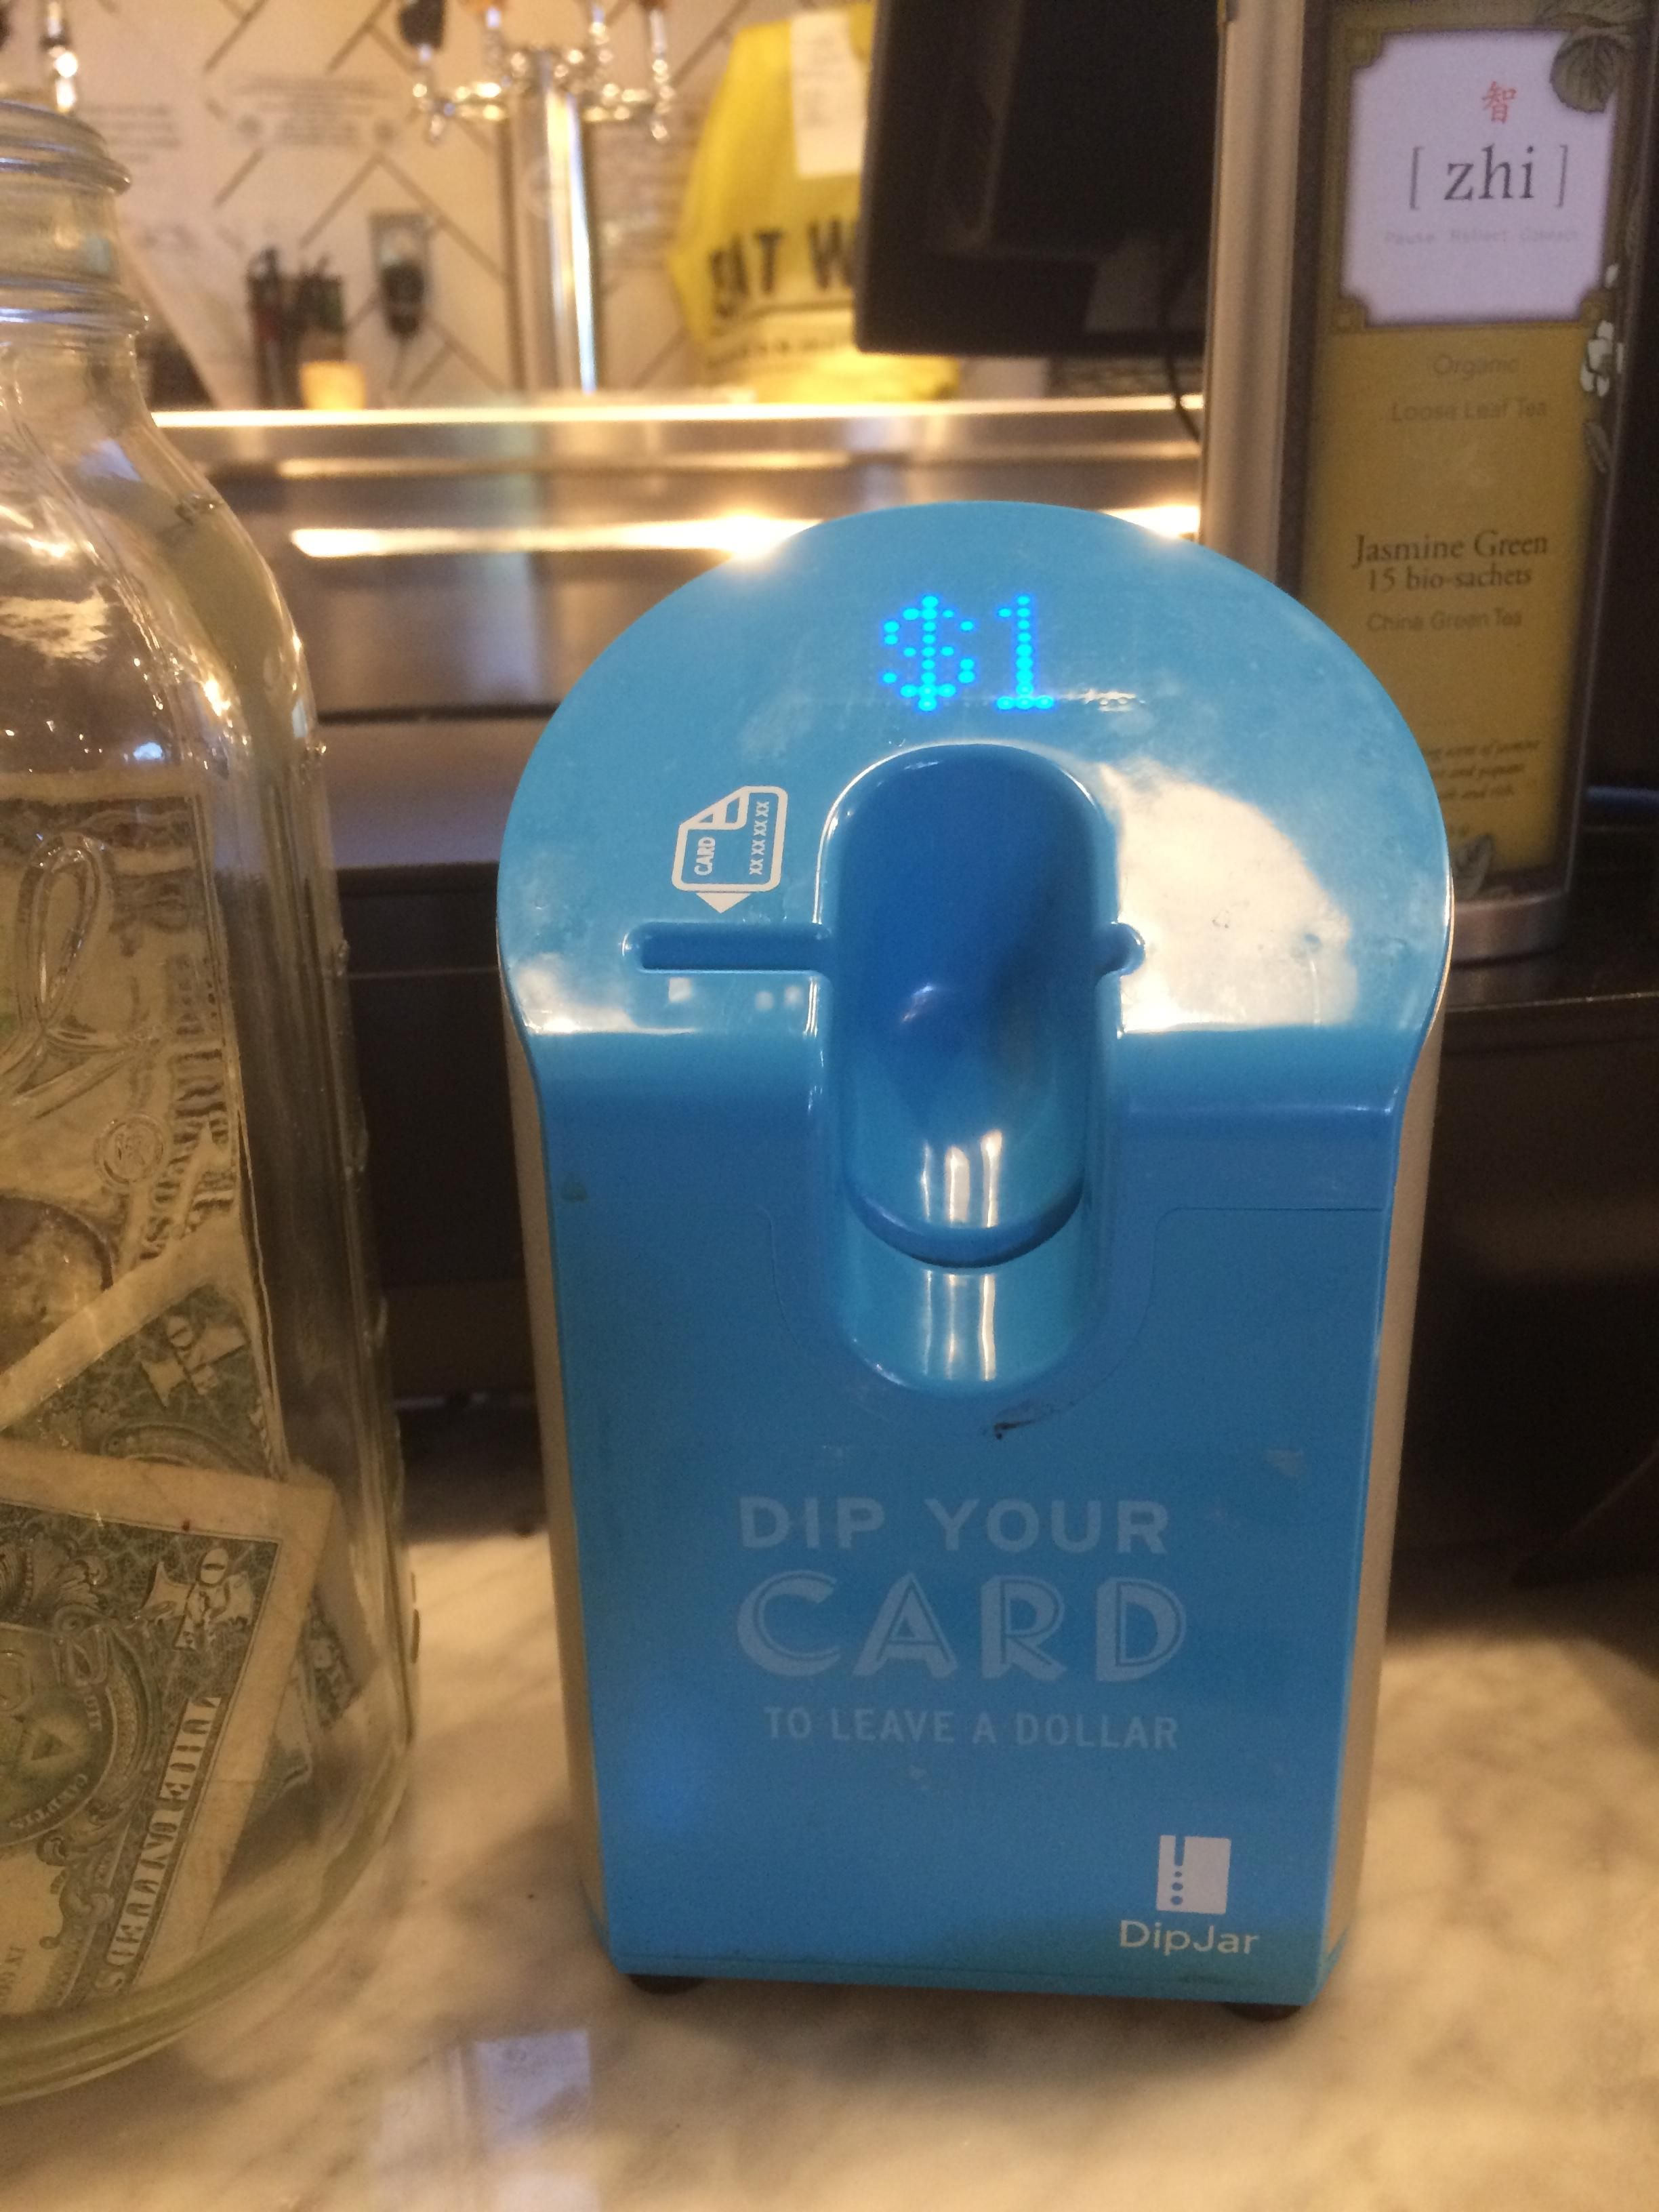 This Credit Card Tip Jar